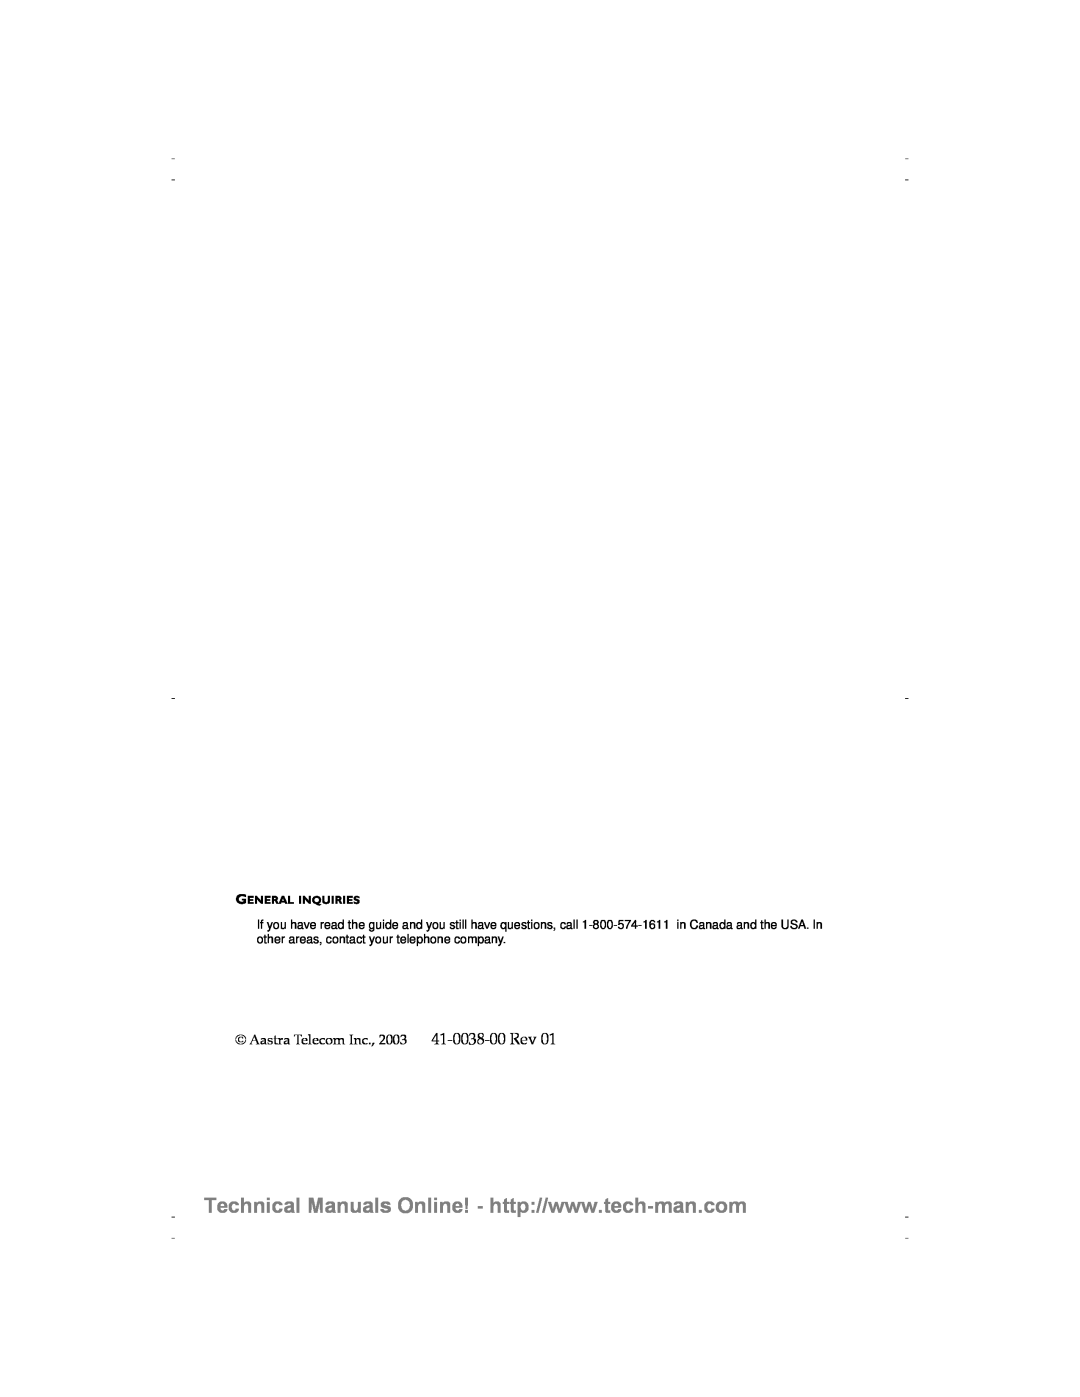 Aastra Telecom 9116 technical manual Aastra Telecom Inc., 2003 41-0038-00 Rev, General Inquiries 